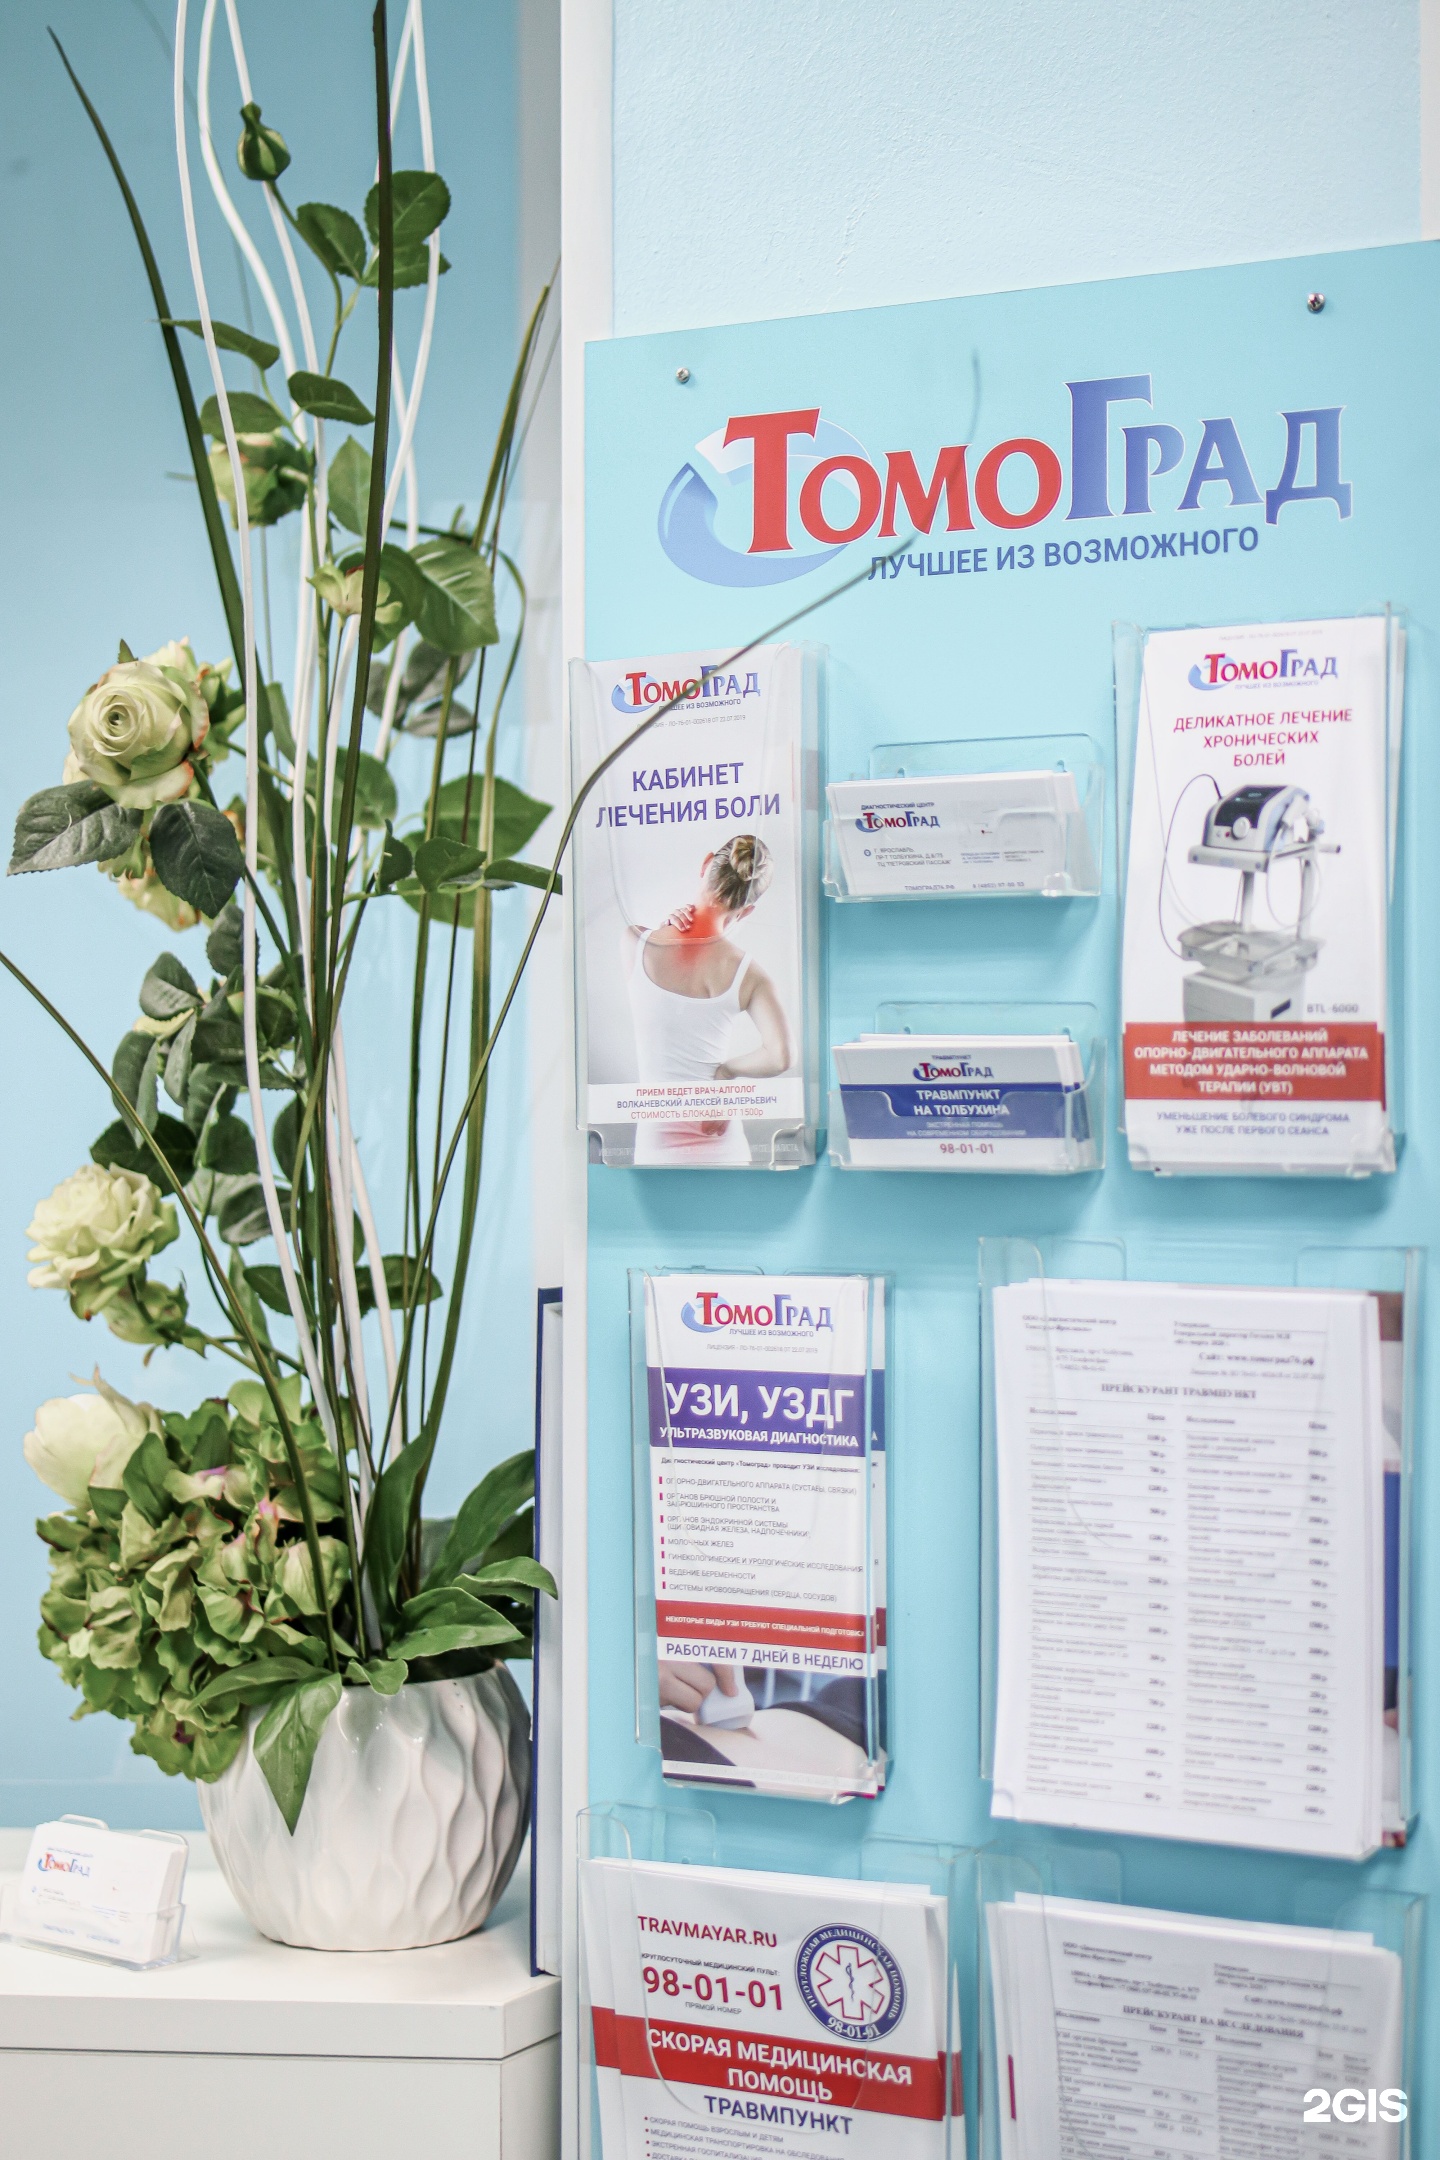 Томоград ярославль телефон регистратуры